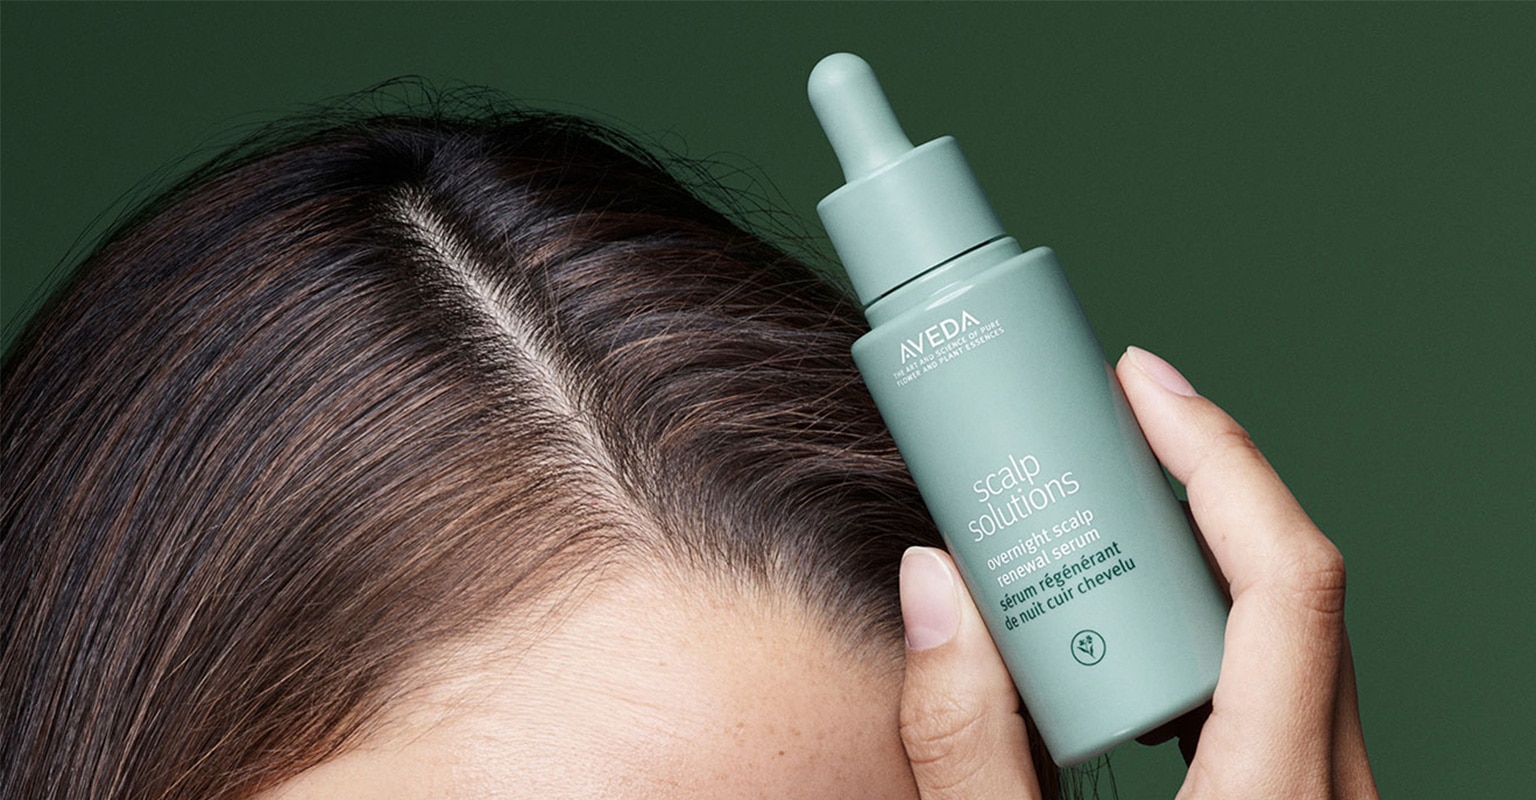 Compra el sérum renovador de noche de scalp solutions para el cuero cabelludo de Aveda, que mejora la hidratación del cuero cabelludo en un 51% en una sola noche.